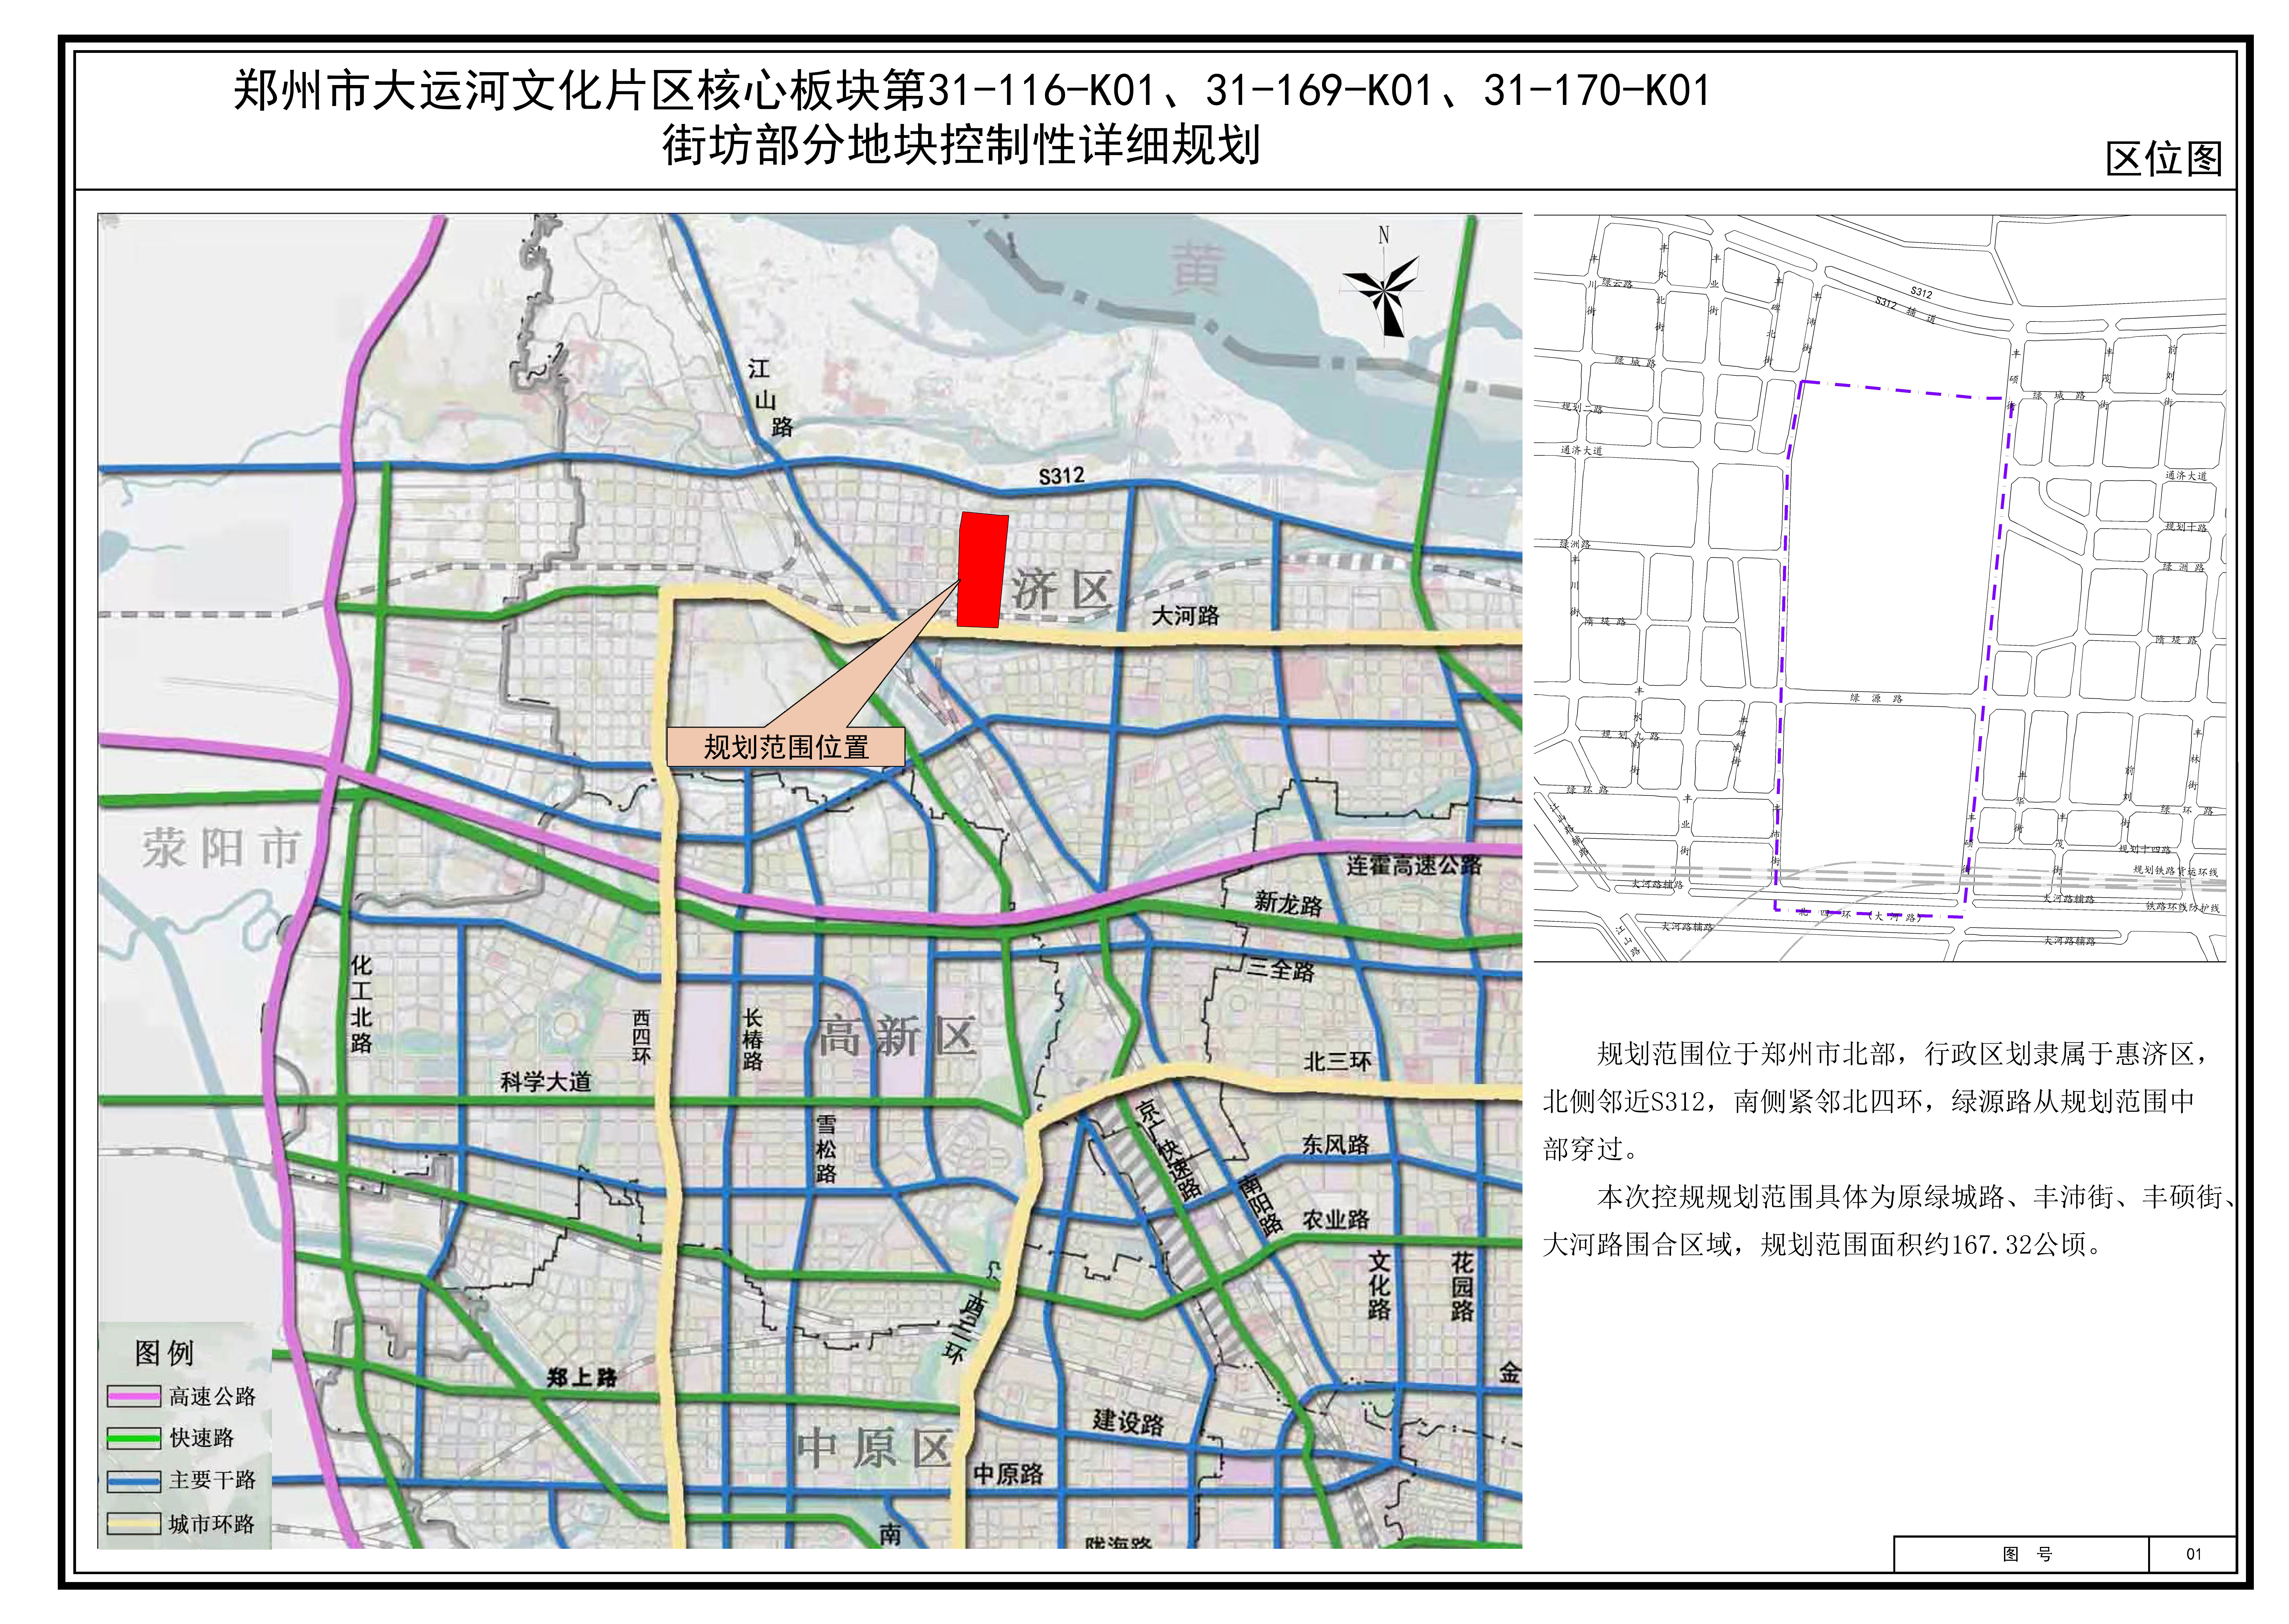 郑州市大运河文化片区核心板块第31-116-K01、31-169-K01、31-170-K01街坊部分地块控制性详细规划